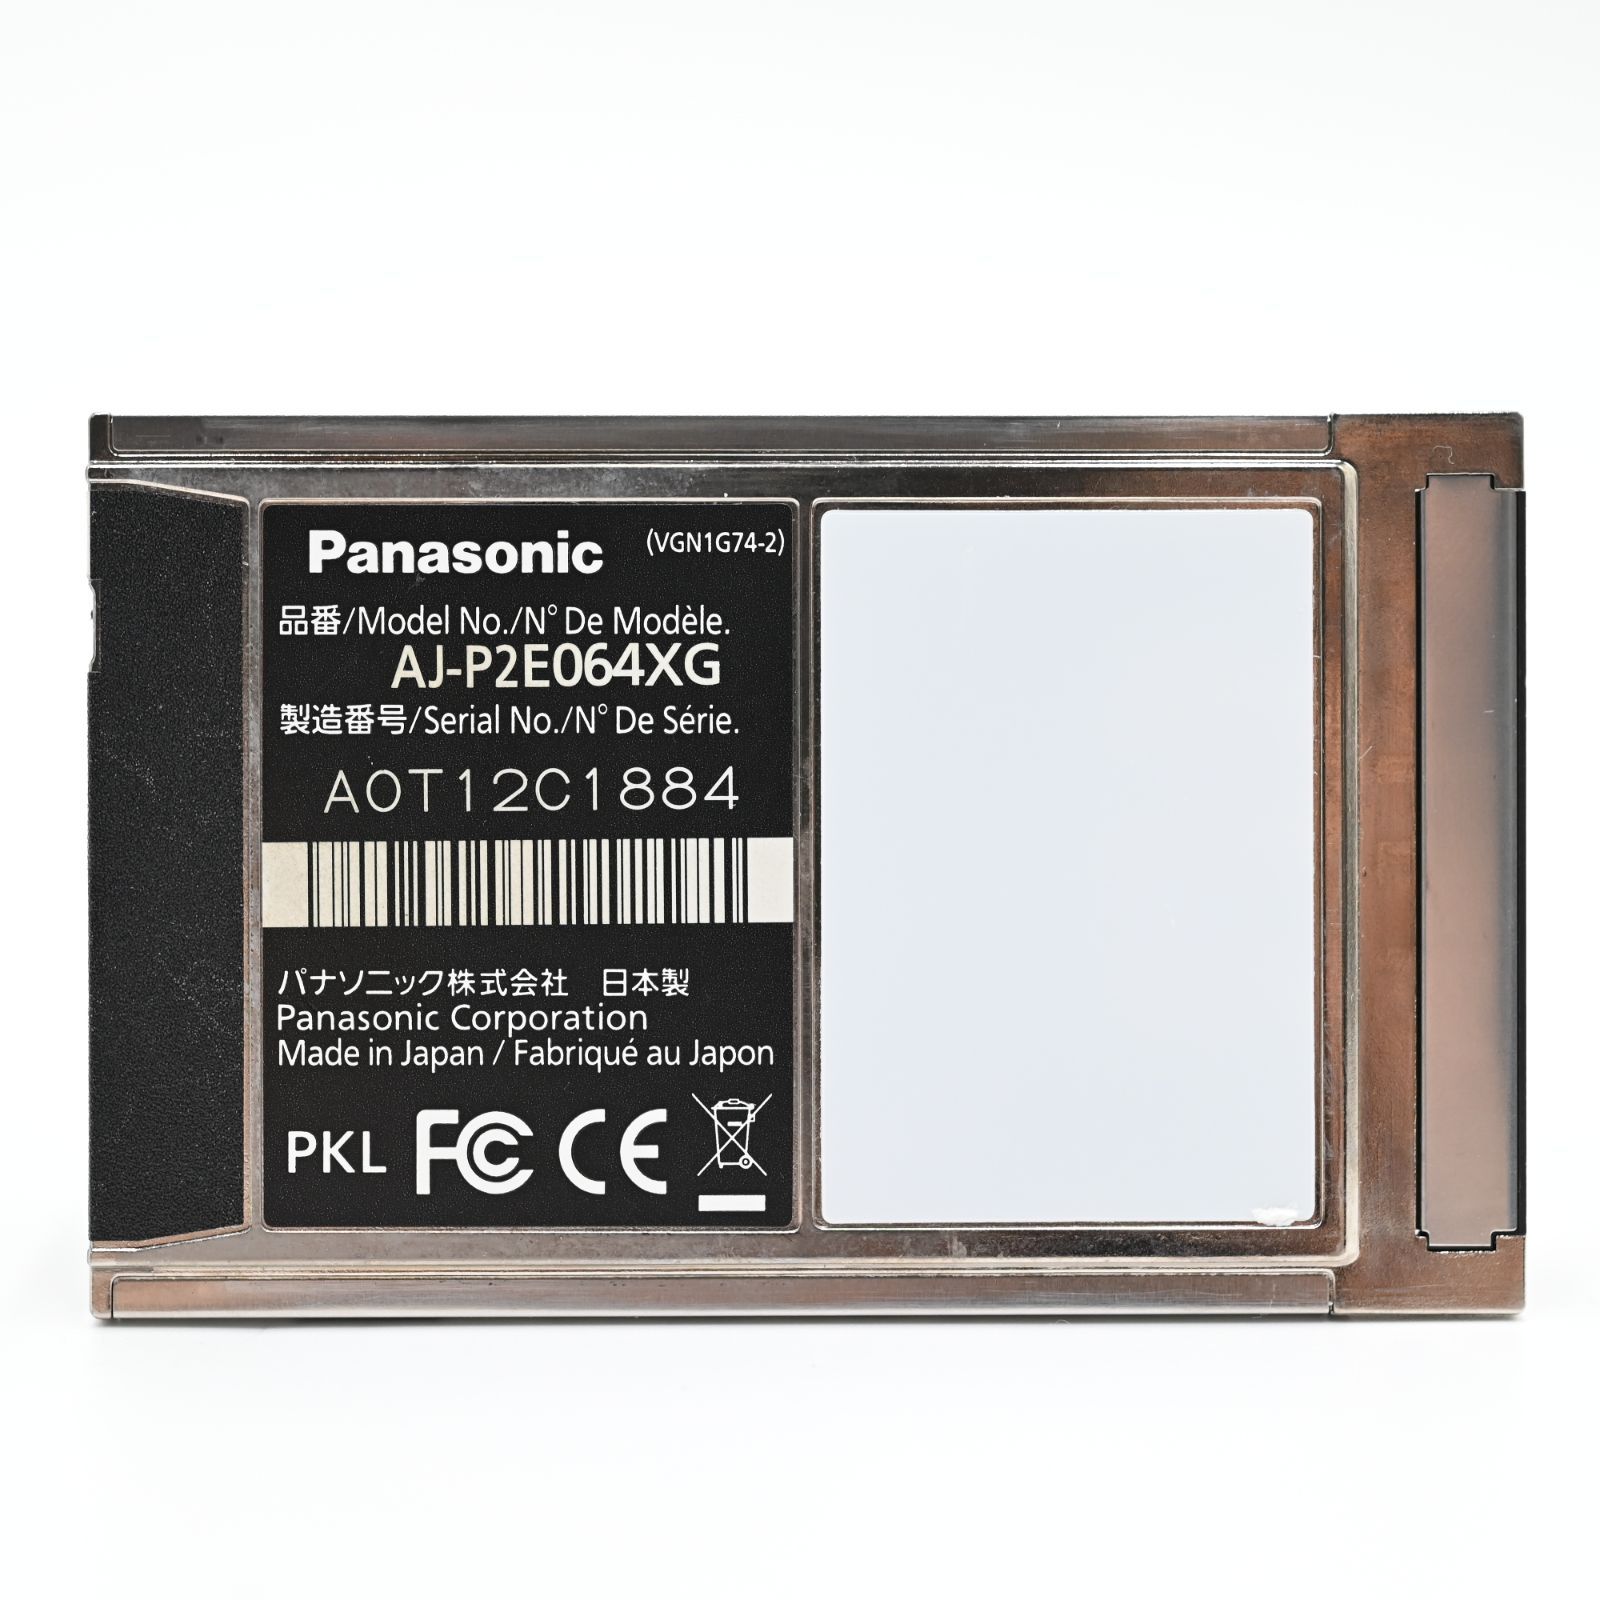 【極上品】Panasonic AJ-P2E064XG メモリーカード P2 card Eシリーズ(64GB) #839